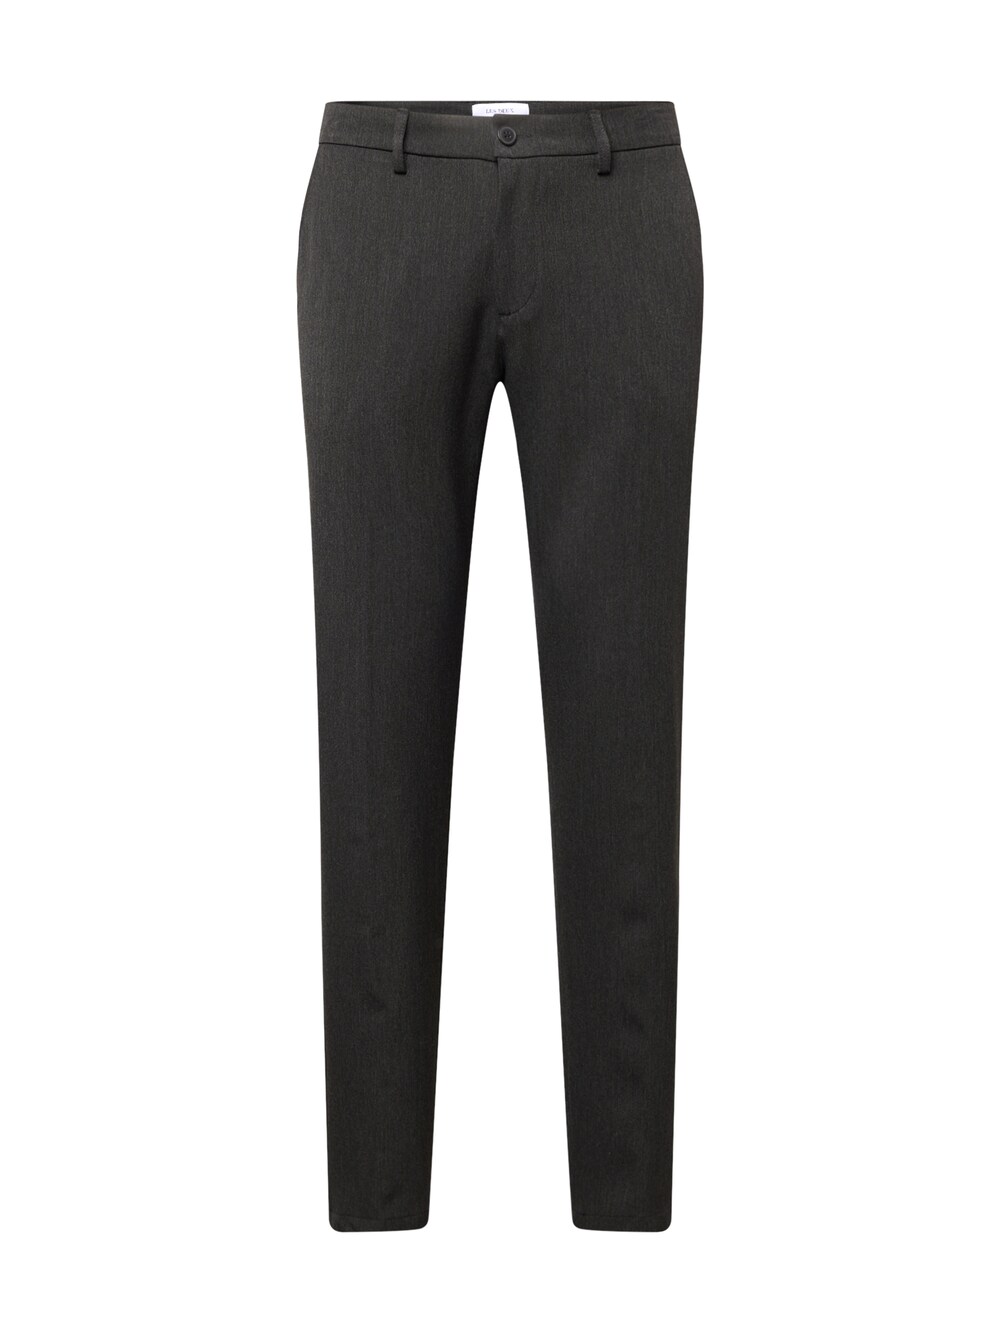 Обычные плиссированные брюки Les Deux Como, антрацит брюки suit pants como les deux цвет black